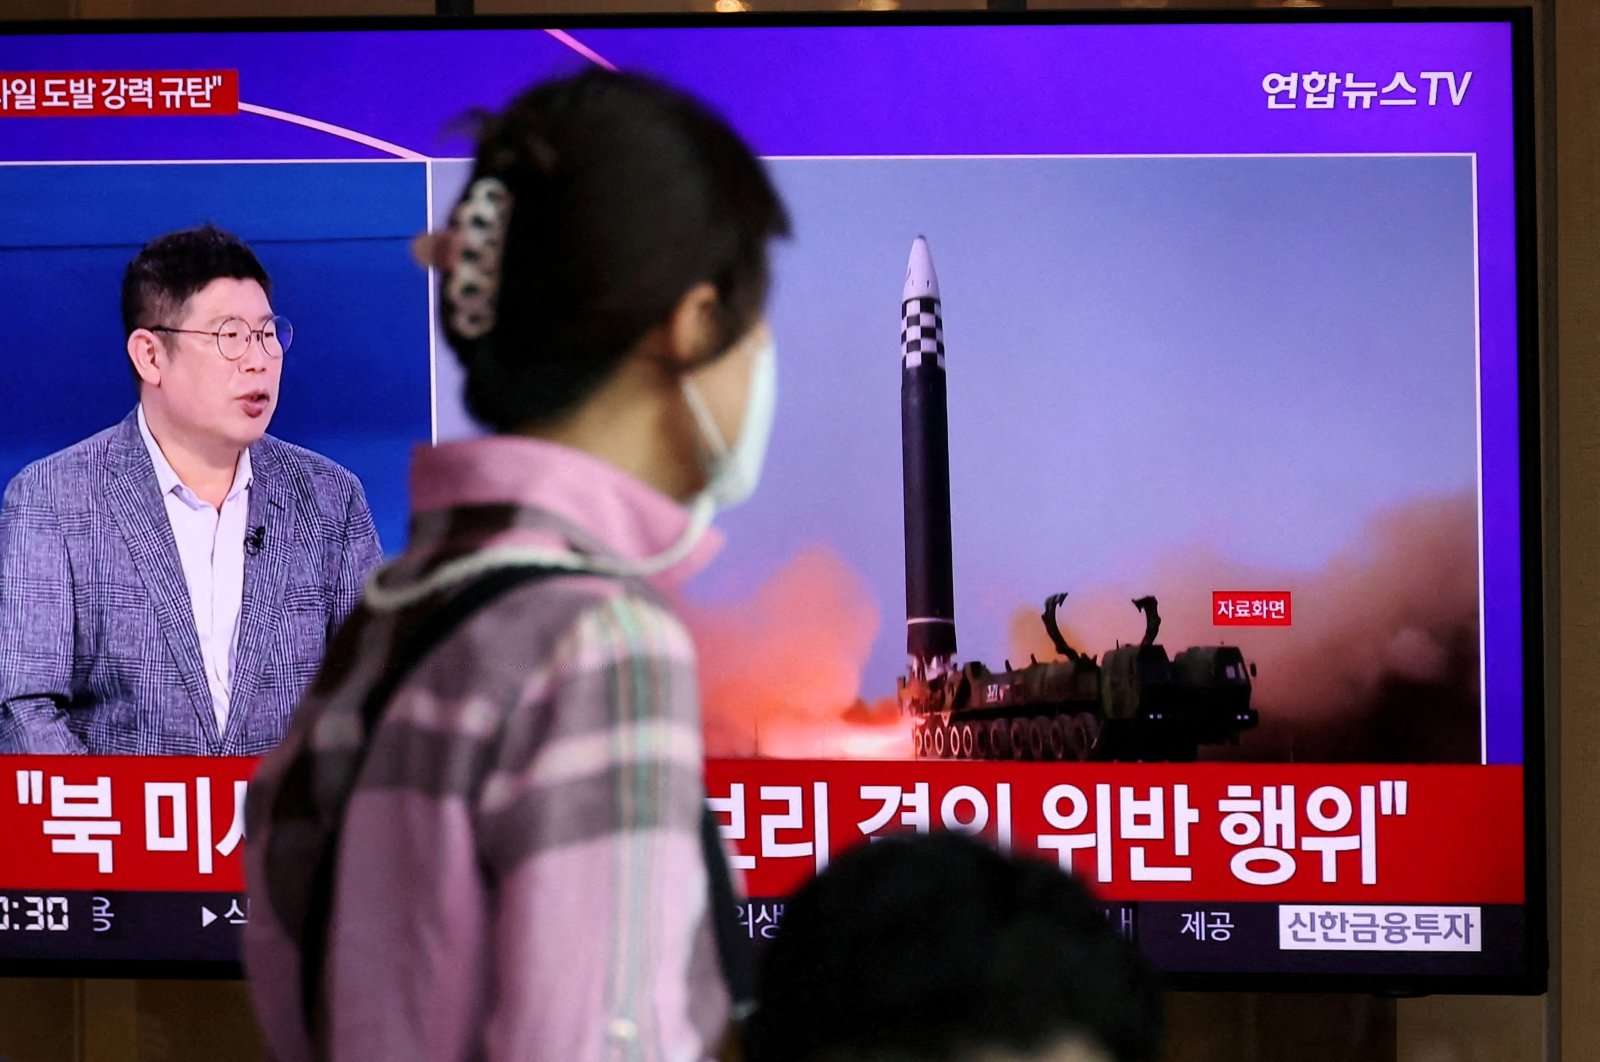 Korea Utara menembakkan salvo rudal beberapa jam setelah Biden meninggalkan Asia